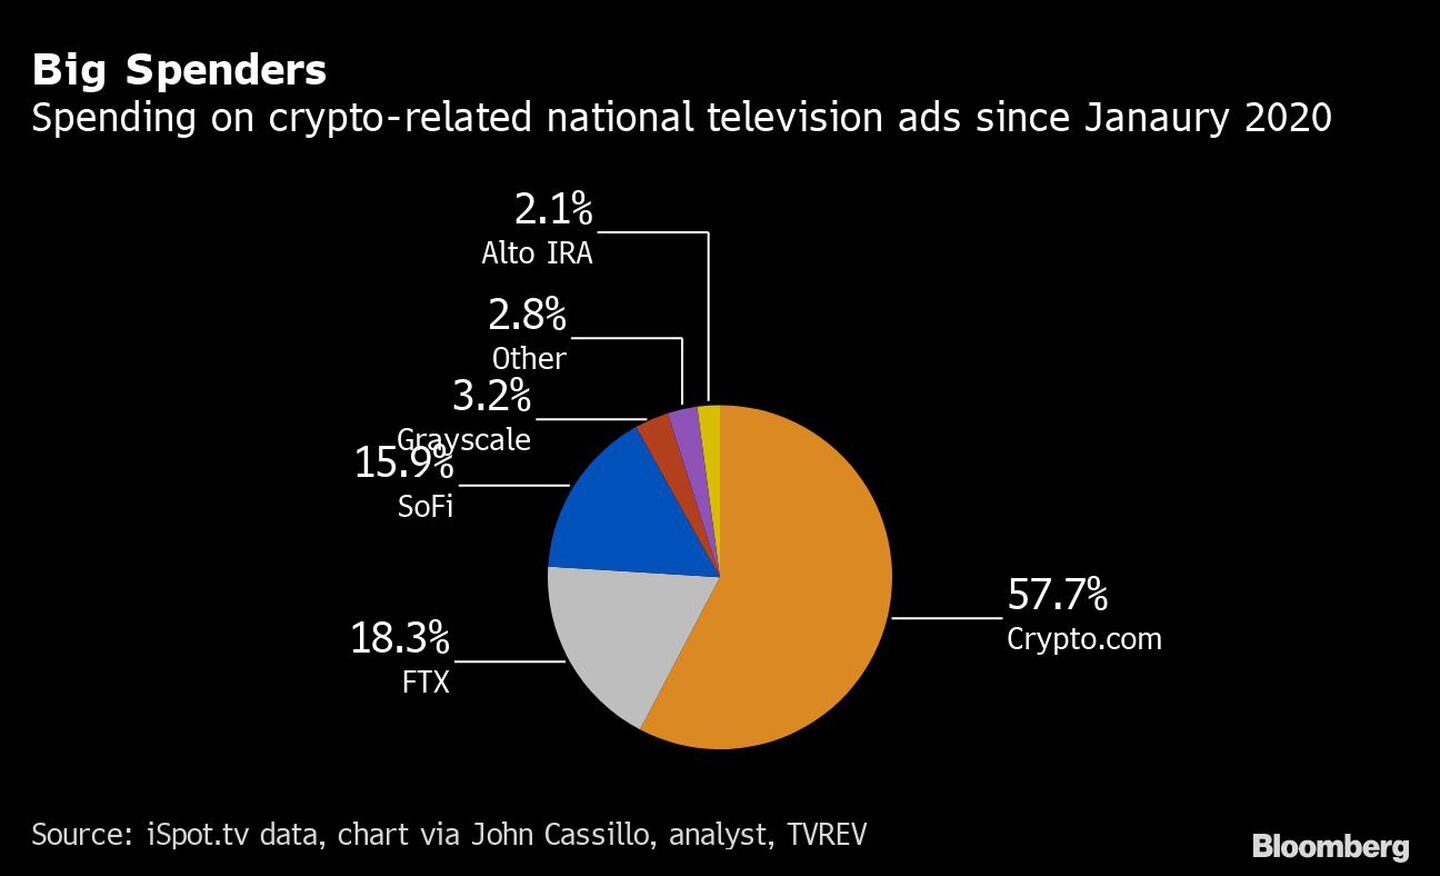 Grandes gastos 
Gasto en anuncios televisivos nacionales relacionados con las criptomonedas desde enero de 2020
57,7% Crypto.com
18,3% FTX
15,9% SoFi
3,2% Grayscale
2,8% Otros 
2,1% Alto IRAdfd